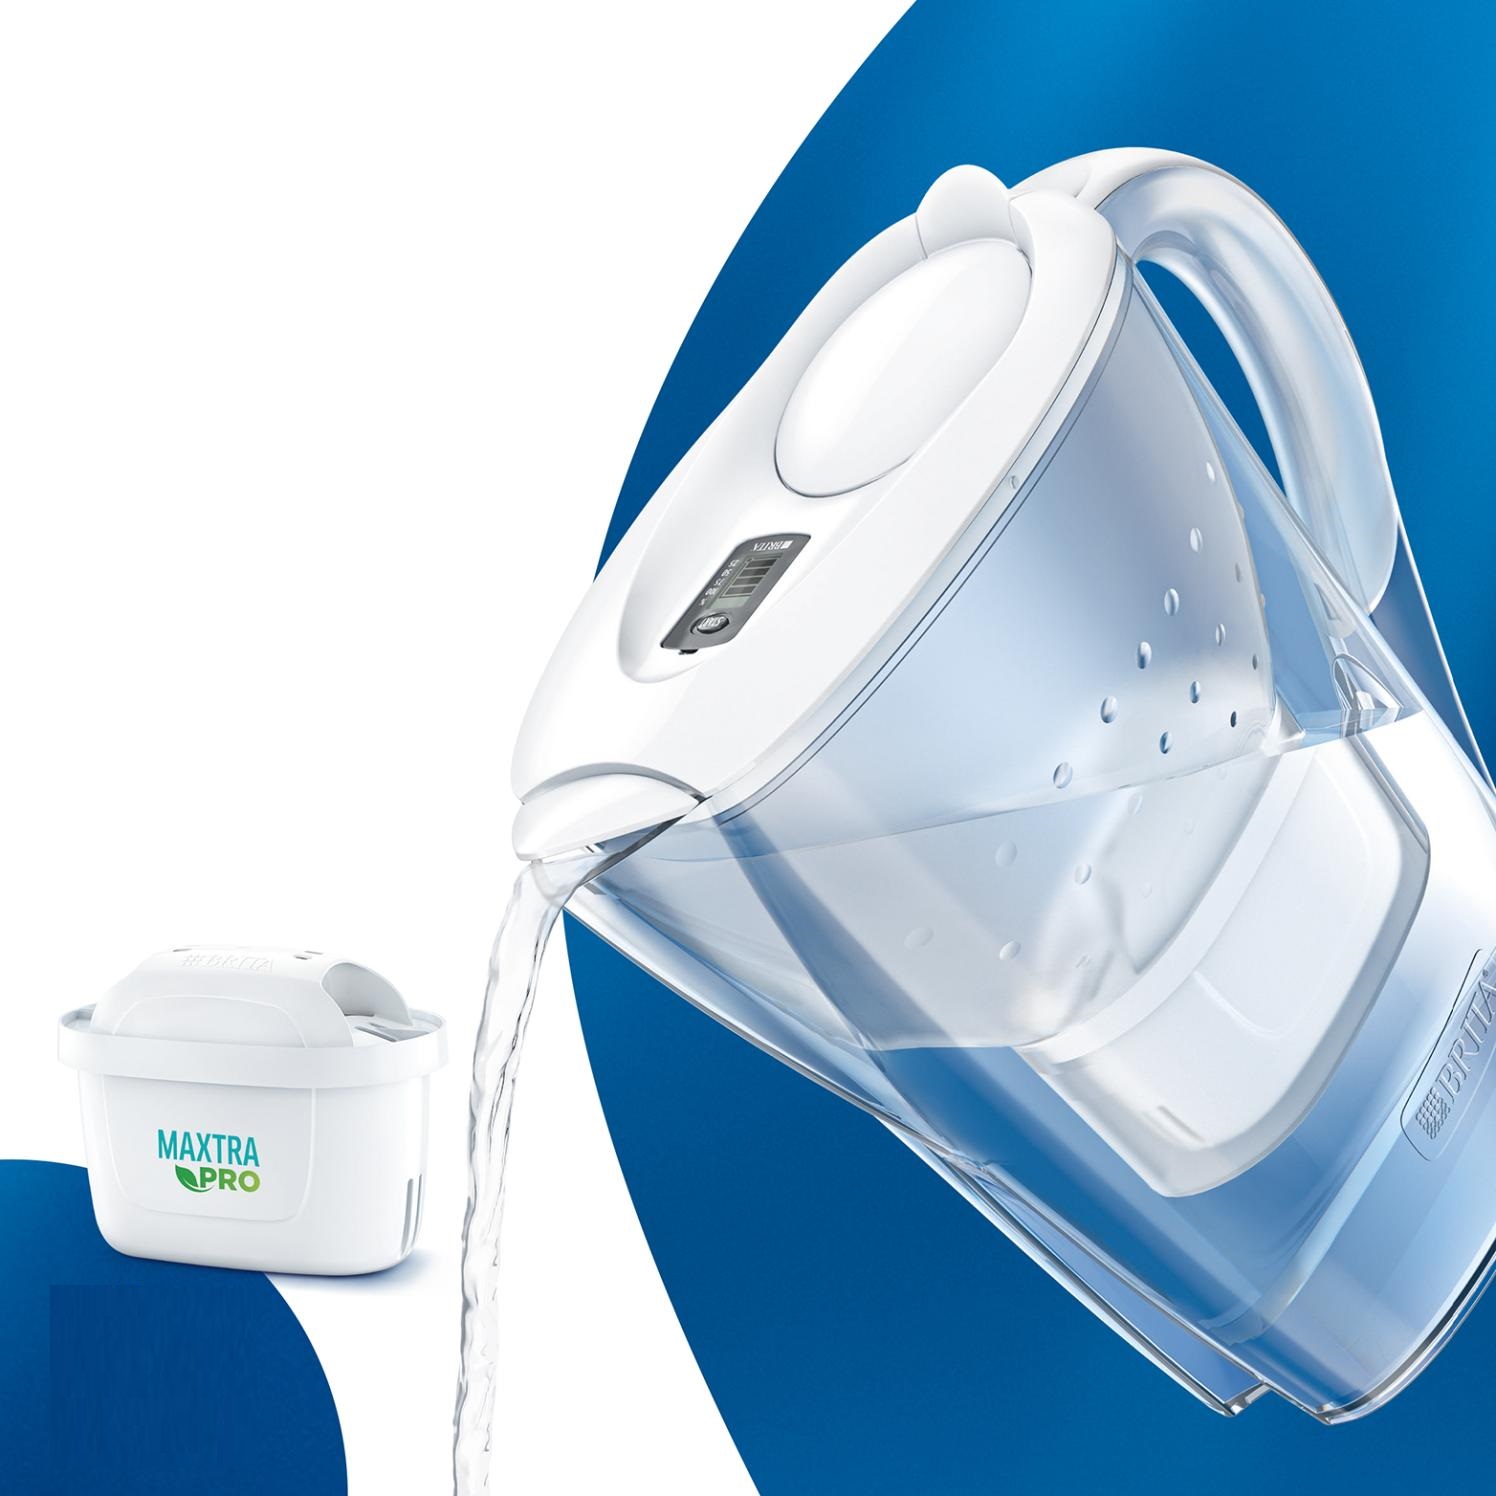 BRITA Jarra filtrante Style azul 2,4L - 3 filtros MAXTRA PRO para hasta  tres meses de agua filtrada - Transforma el agua del grifo en agua de buen  sabor para beber y cocinar